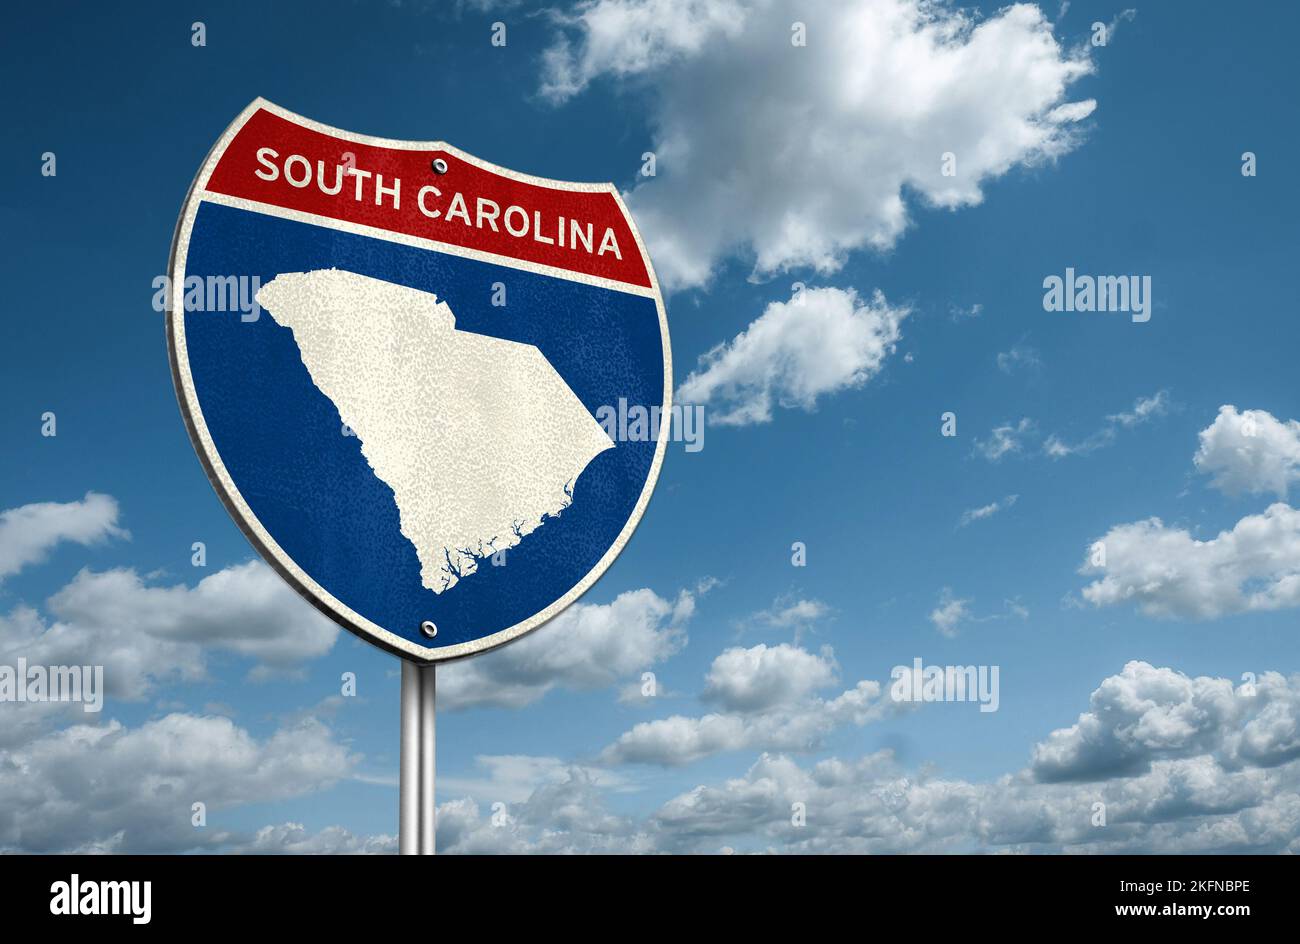 Carolina del Sur - Estado de los Estados Unidos en la región costera del sudeste de los Estados Unidos Foto de stock